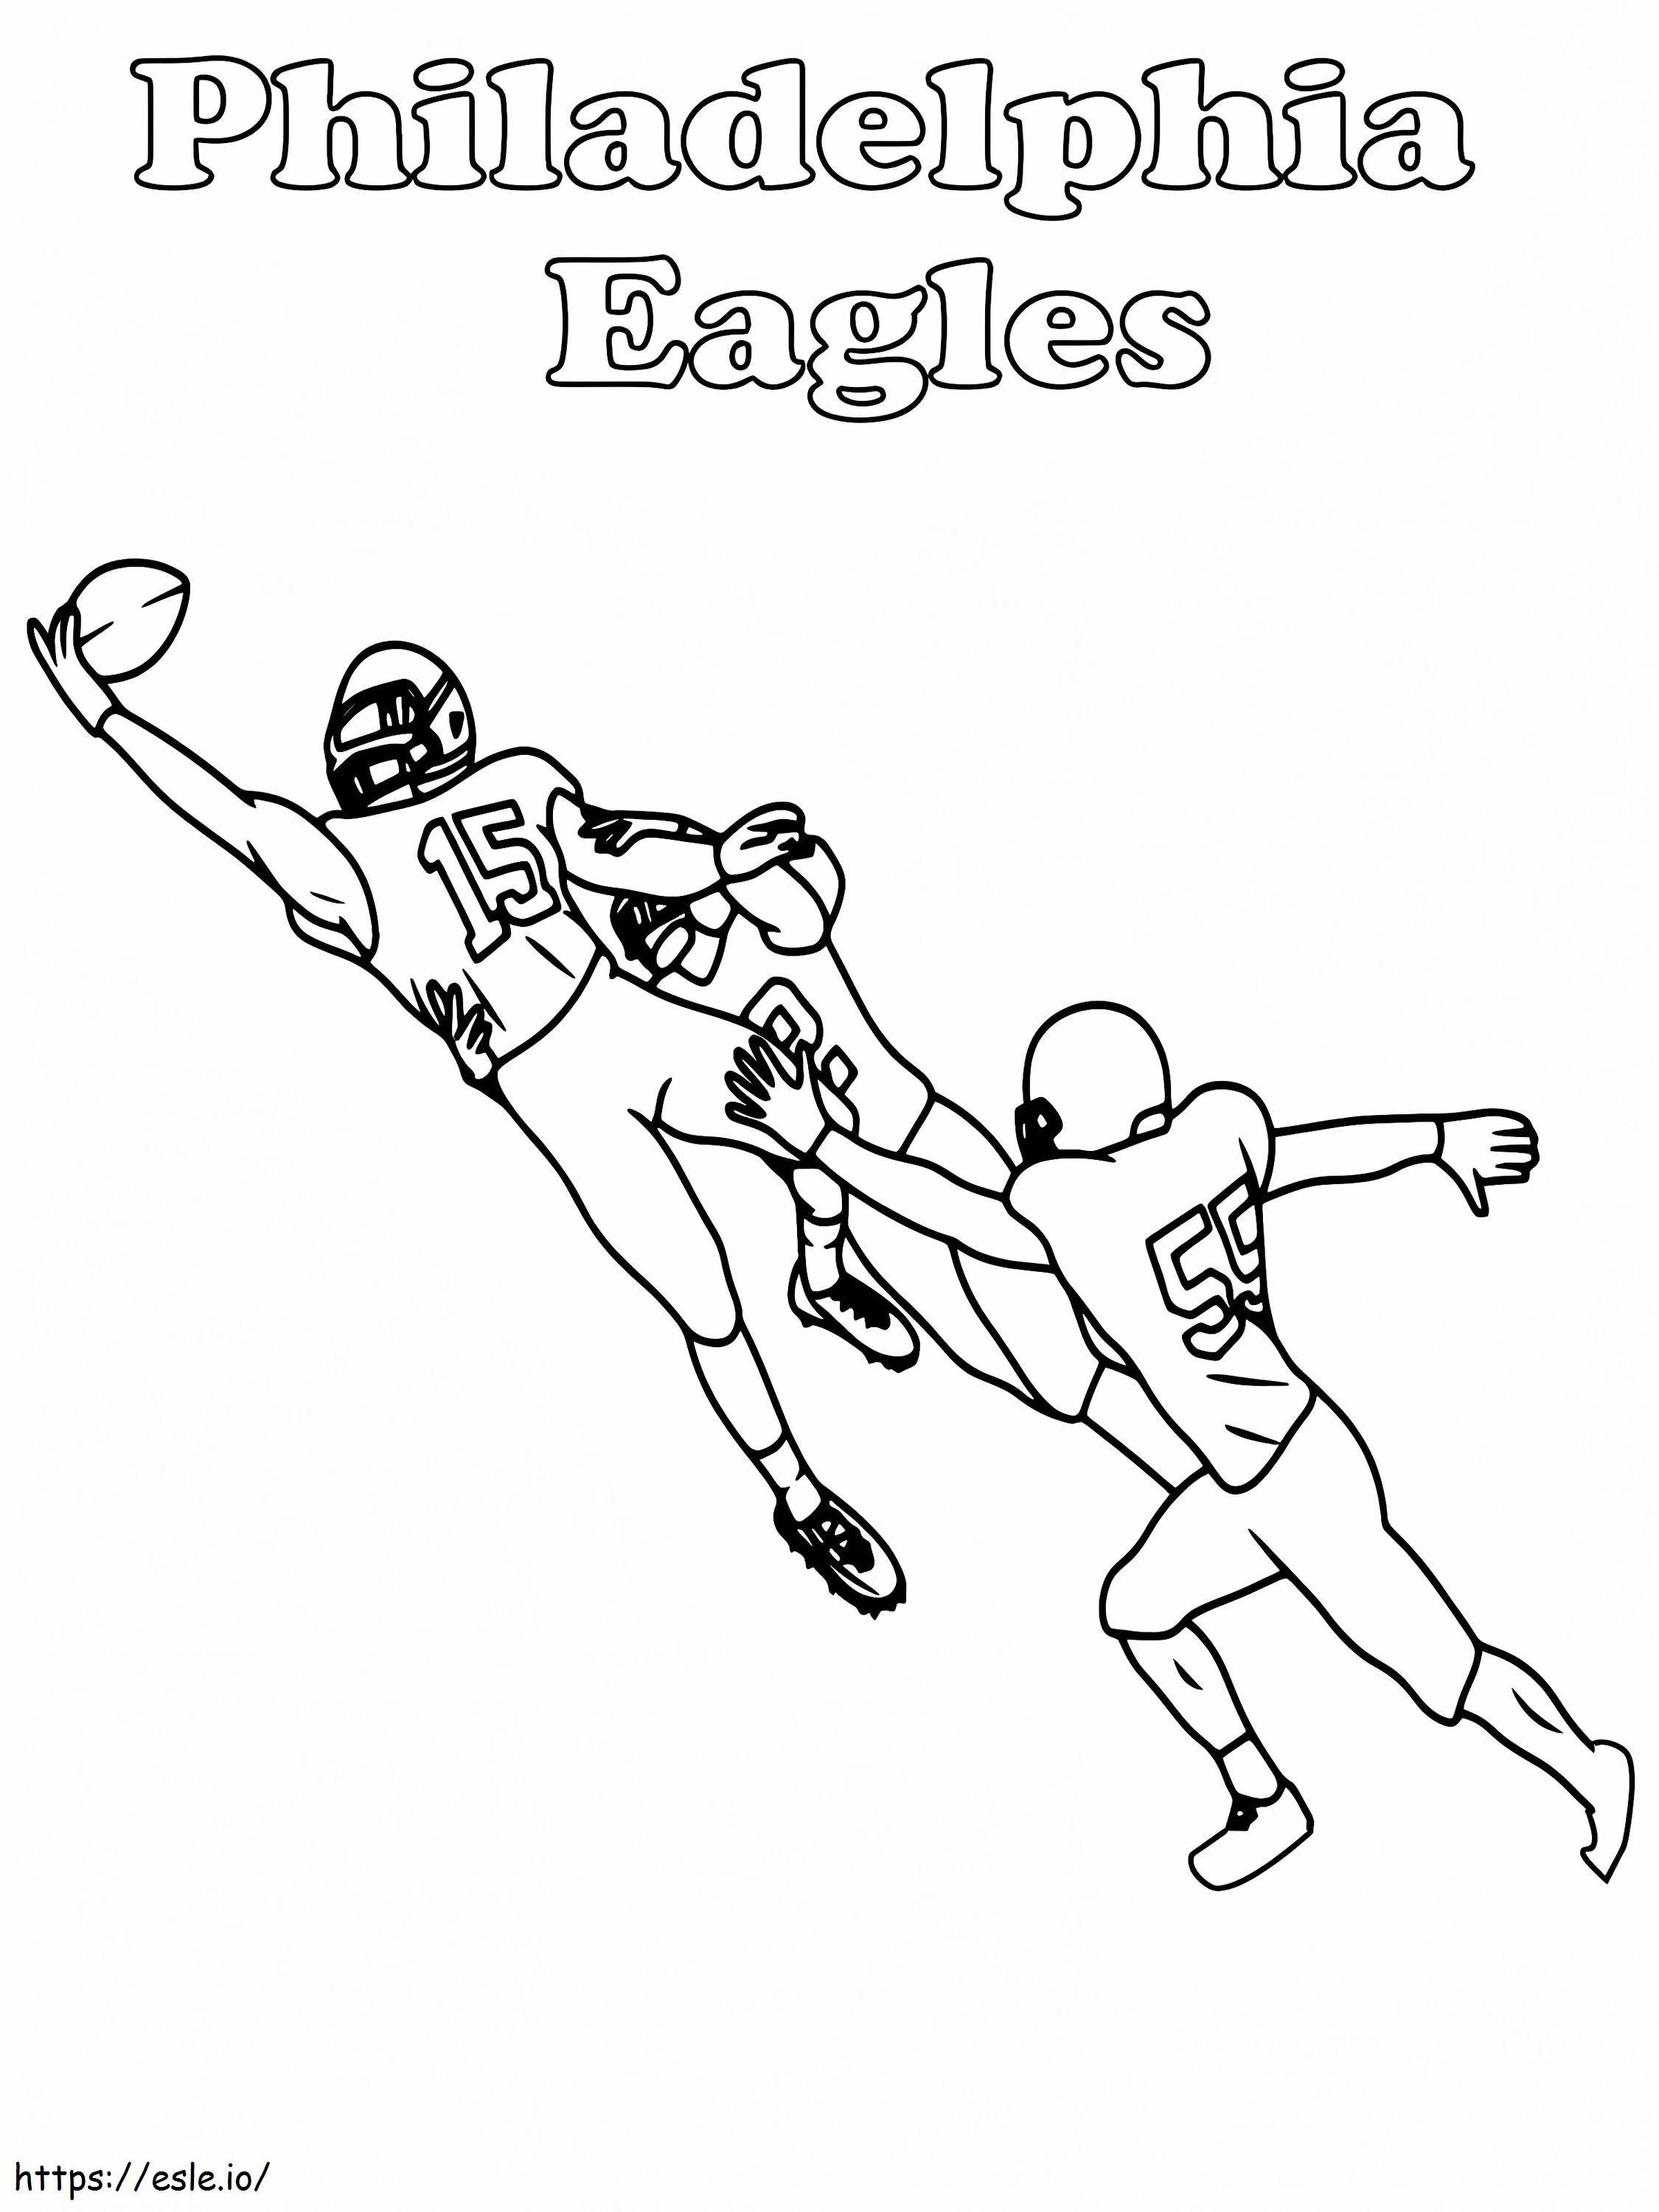 Złapanie gracza Philadelphia Eagles kolorowanka